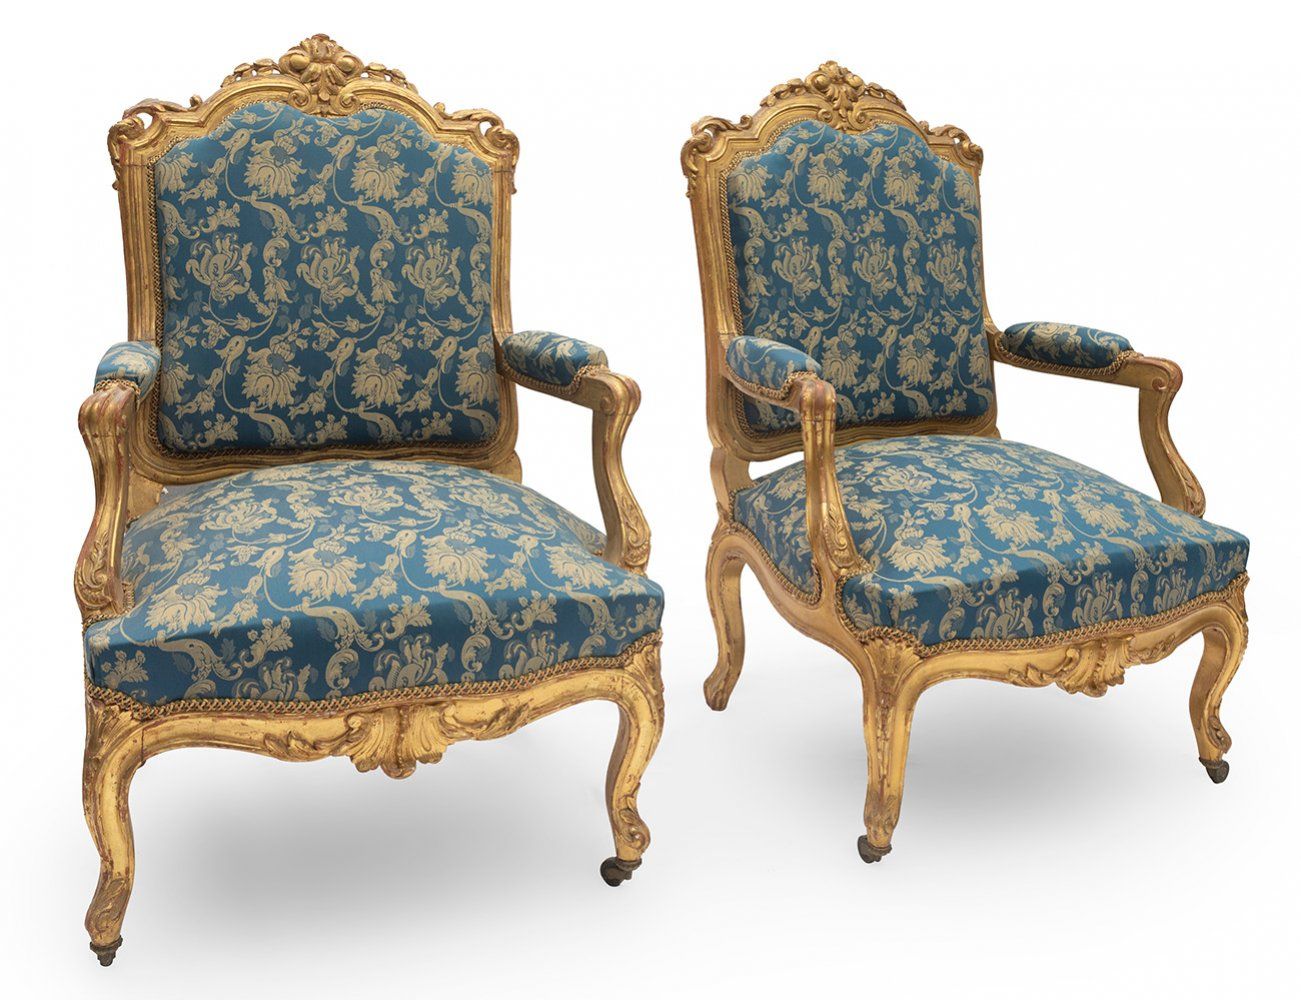 Pair of Louis Philippe armchairs, ca. 1840. 一对路易-菲利普扶手椅，约1840年。
木头雕刻和精金镀金。
大型模型。&hellip;